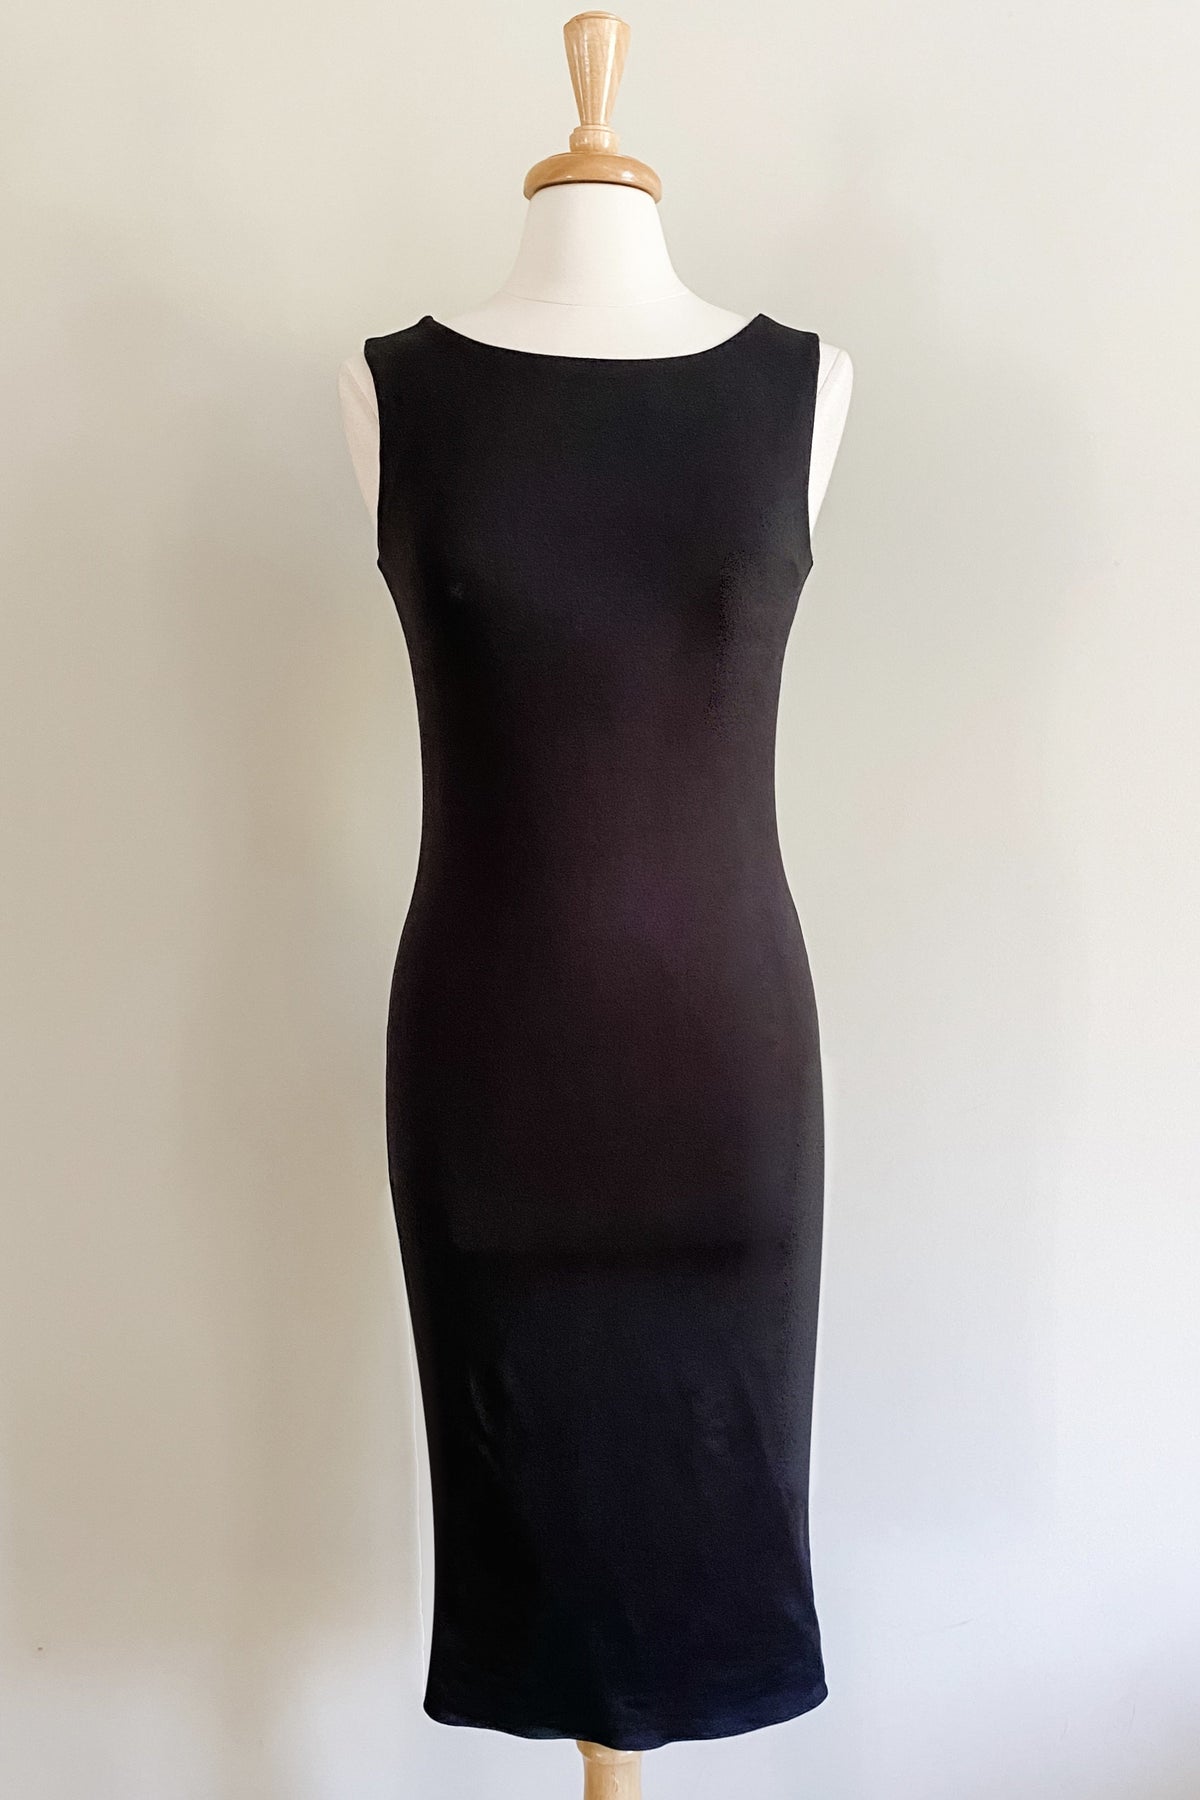 Diane Kroe Sheath Dress in Black Color